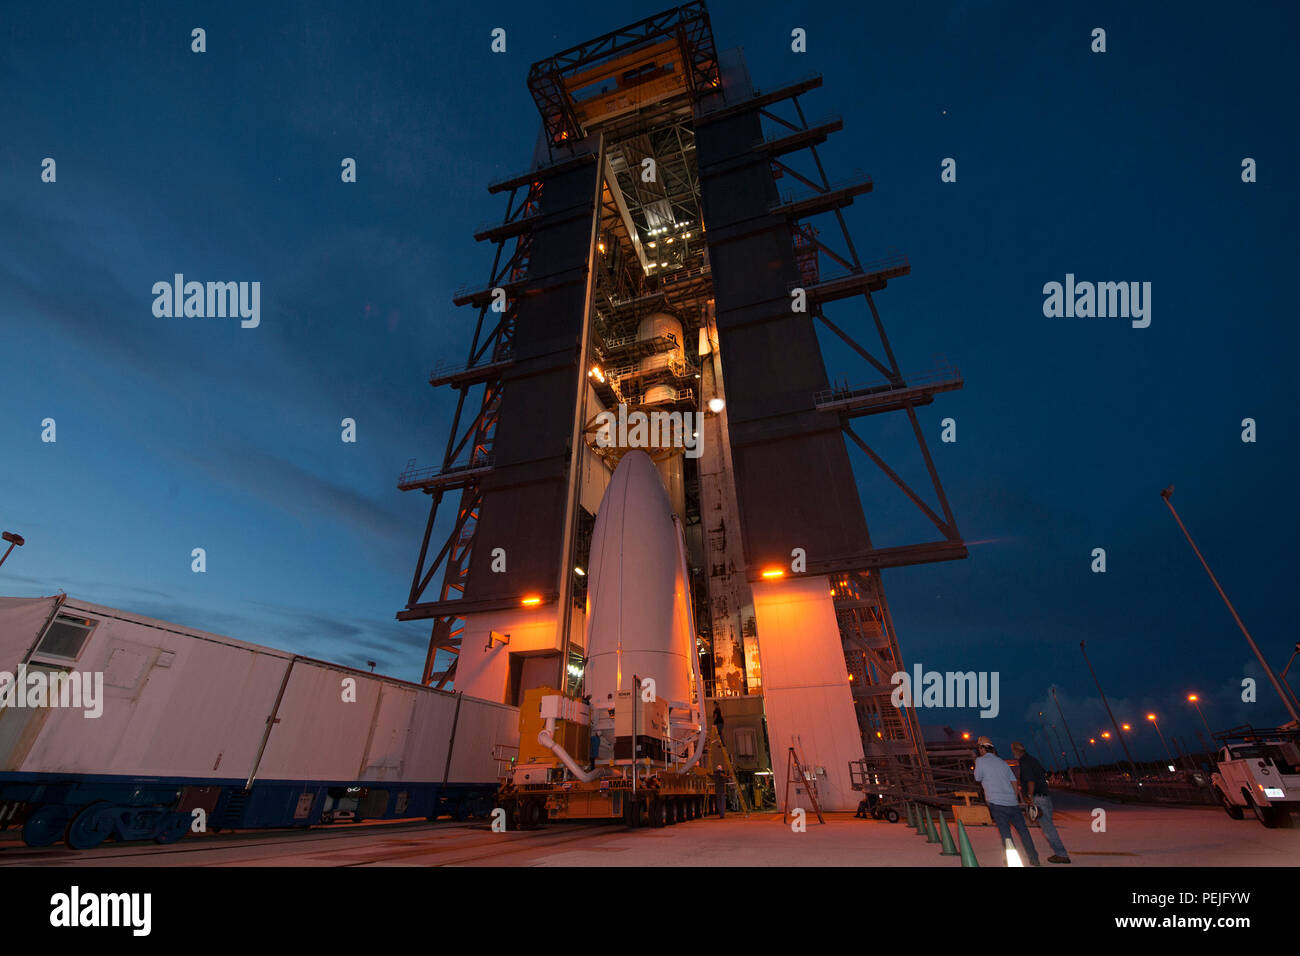 1508019-N-ZZ999-005 Cape Canaveral, Fla. (Agosto 19, 2015), Stati Uniti La marina del quarto Utente Mobile sistema oggettivo (MUOS) satellite, incapsulato in un 5 metri di carenatura per il payload, è accoppiato ad un Atlas V booster all'interno dell'integrazione verticale Impianto di Cape Canaveral's Space Launch Complex-41. Il lancio è previsto per il mese di agosto 31, 2015. MUOS è la nuova generazione di banda stretta tactical sistema di comunicazioni di satellite progettato per migliorare significativamente al di fuori-linea-di-vista le comunicazioni per le forze americane in movimento. (U.S. Navy Photo courtesy of United Launch Alliance/rilasciato) Foto Stock